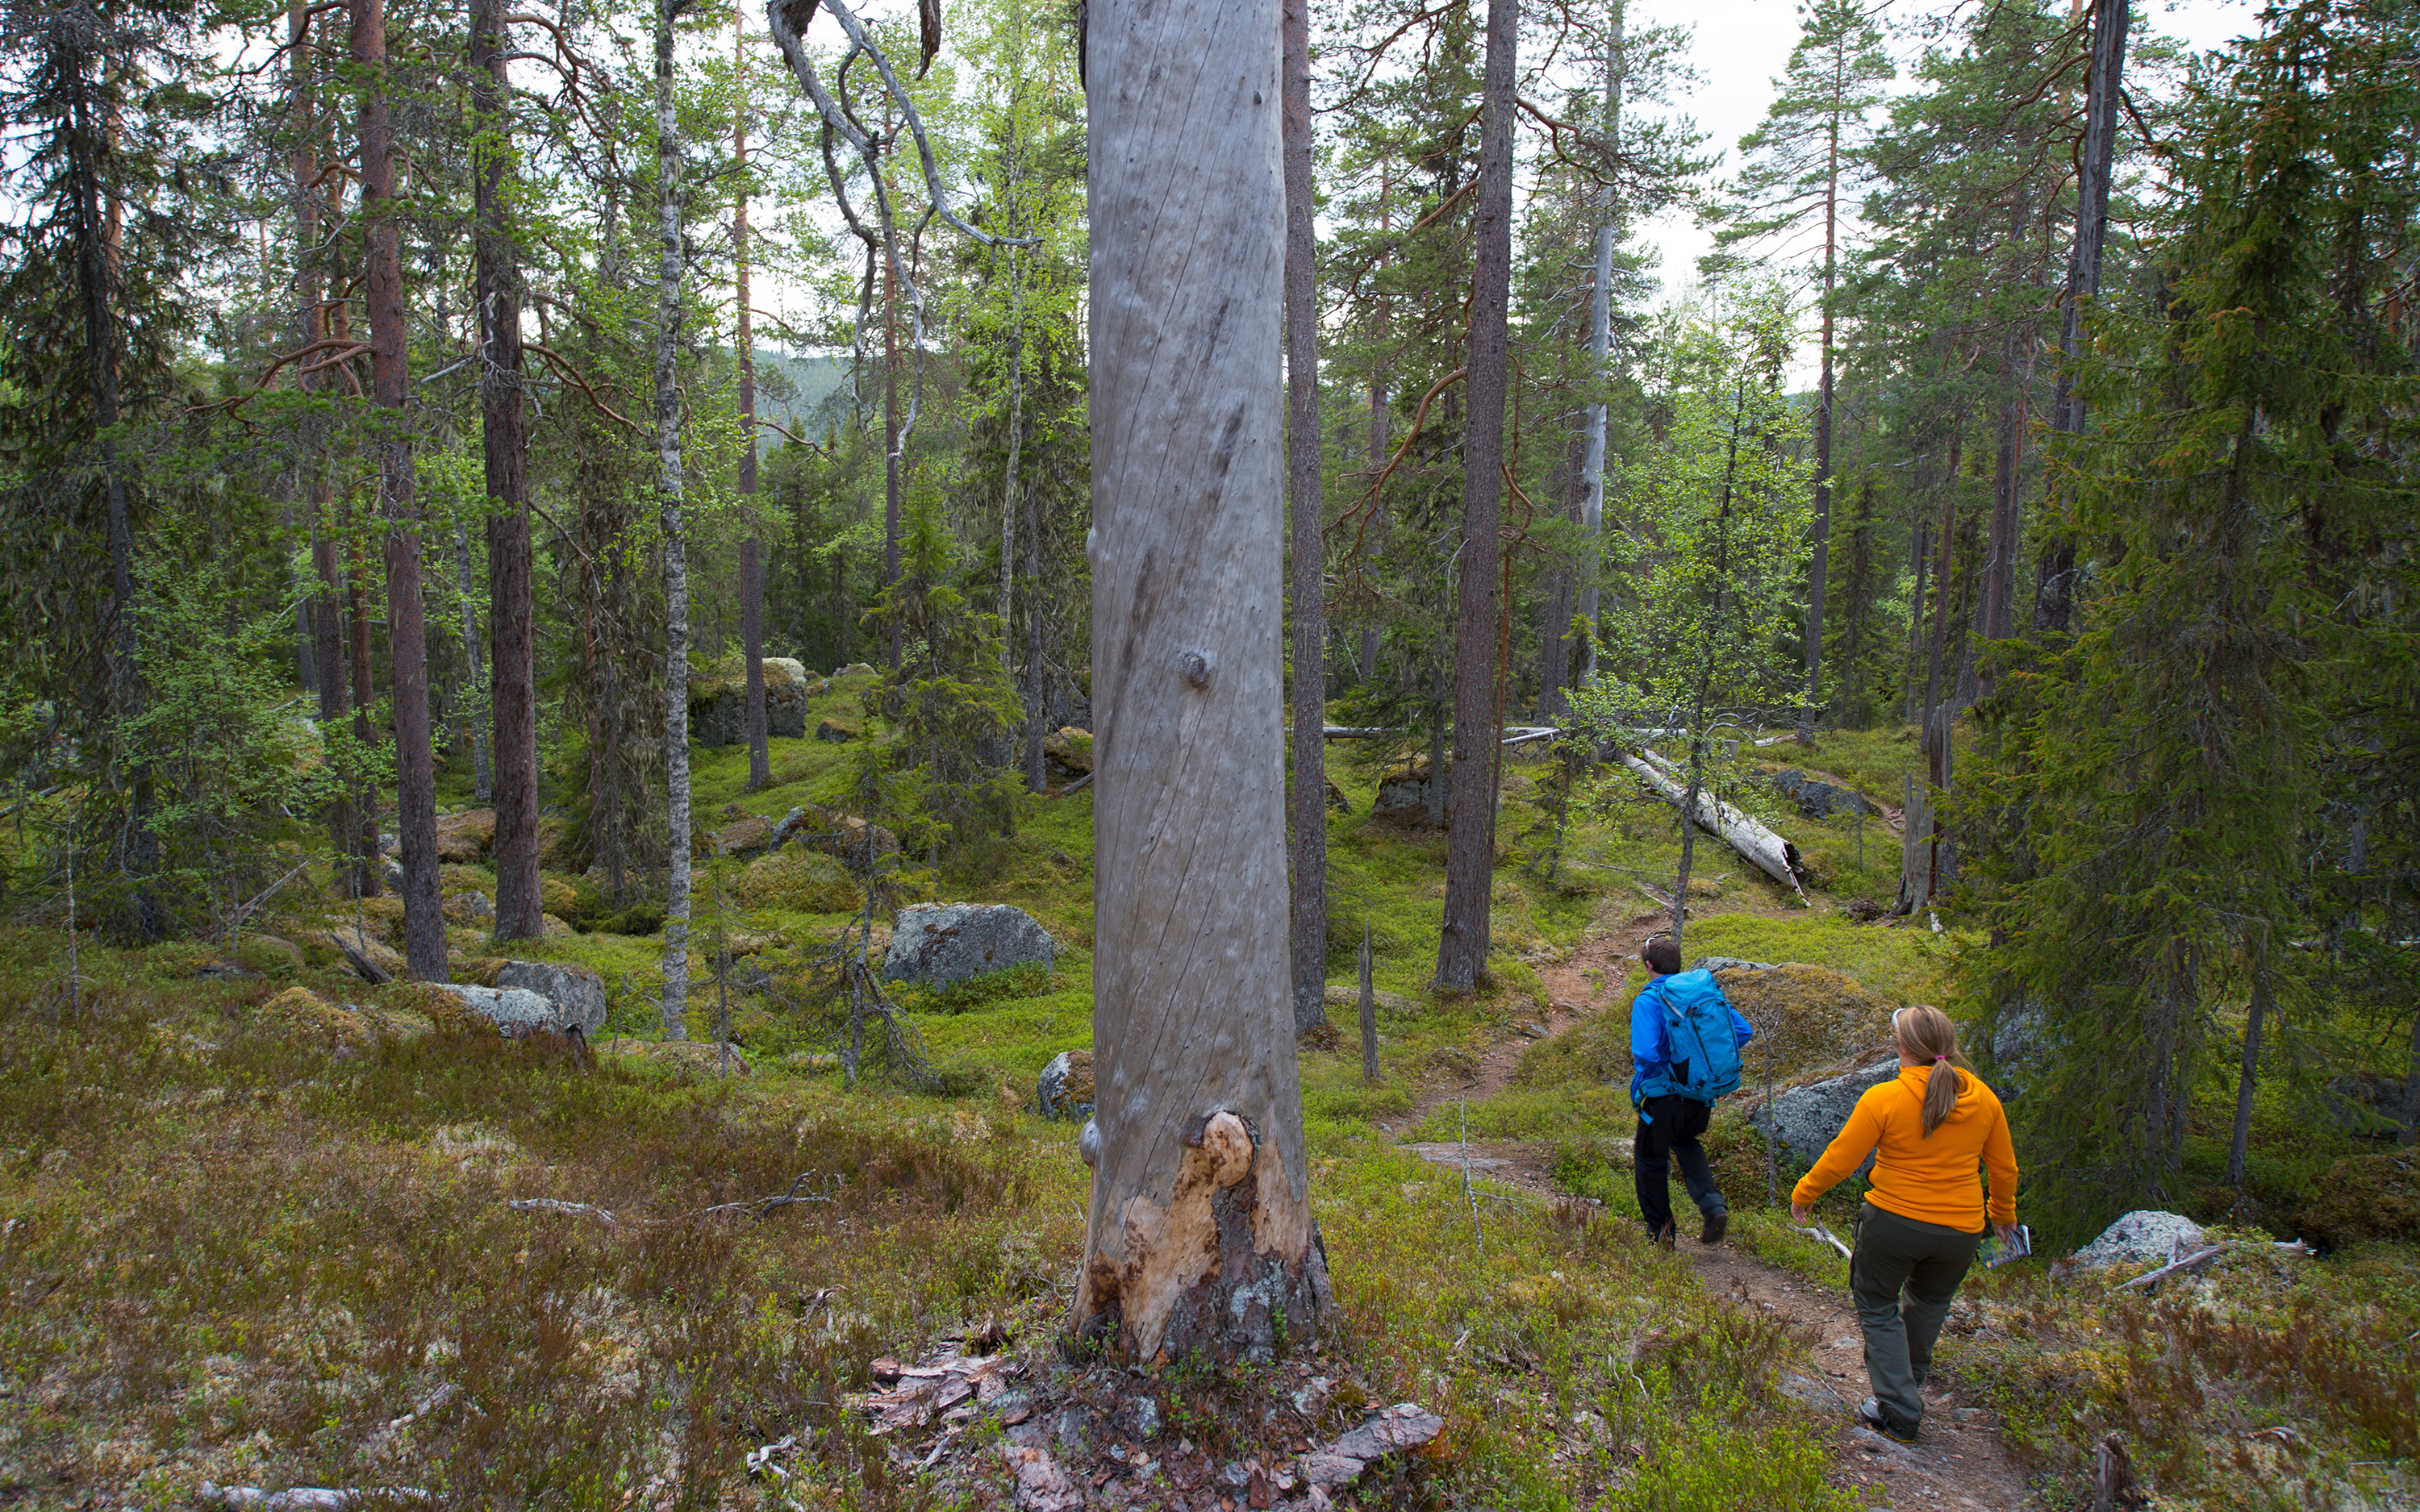 Två personer vandrar på en stig i skogsmiljö med gamla tallar.